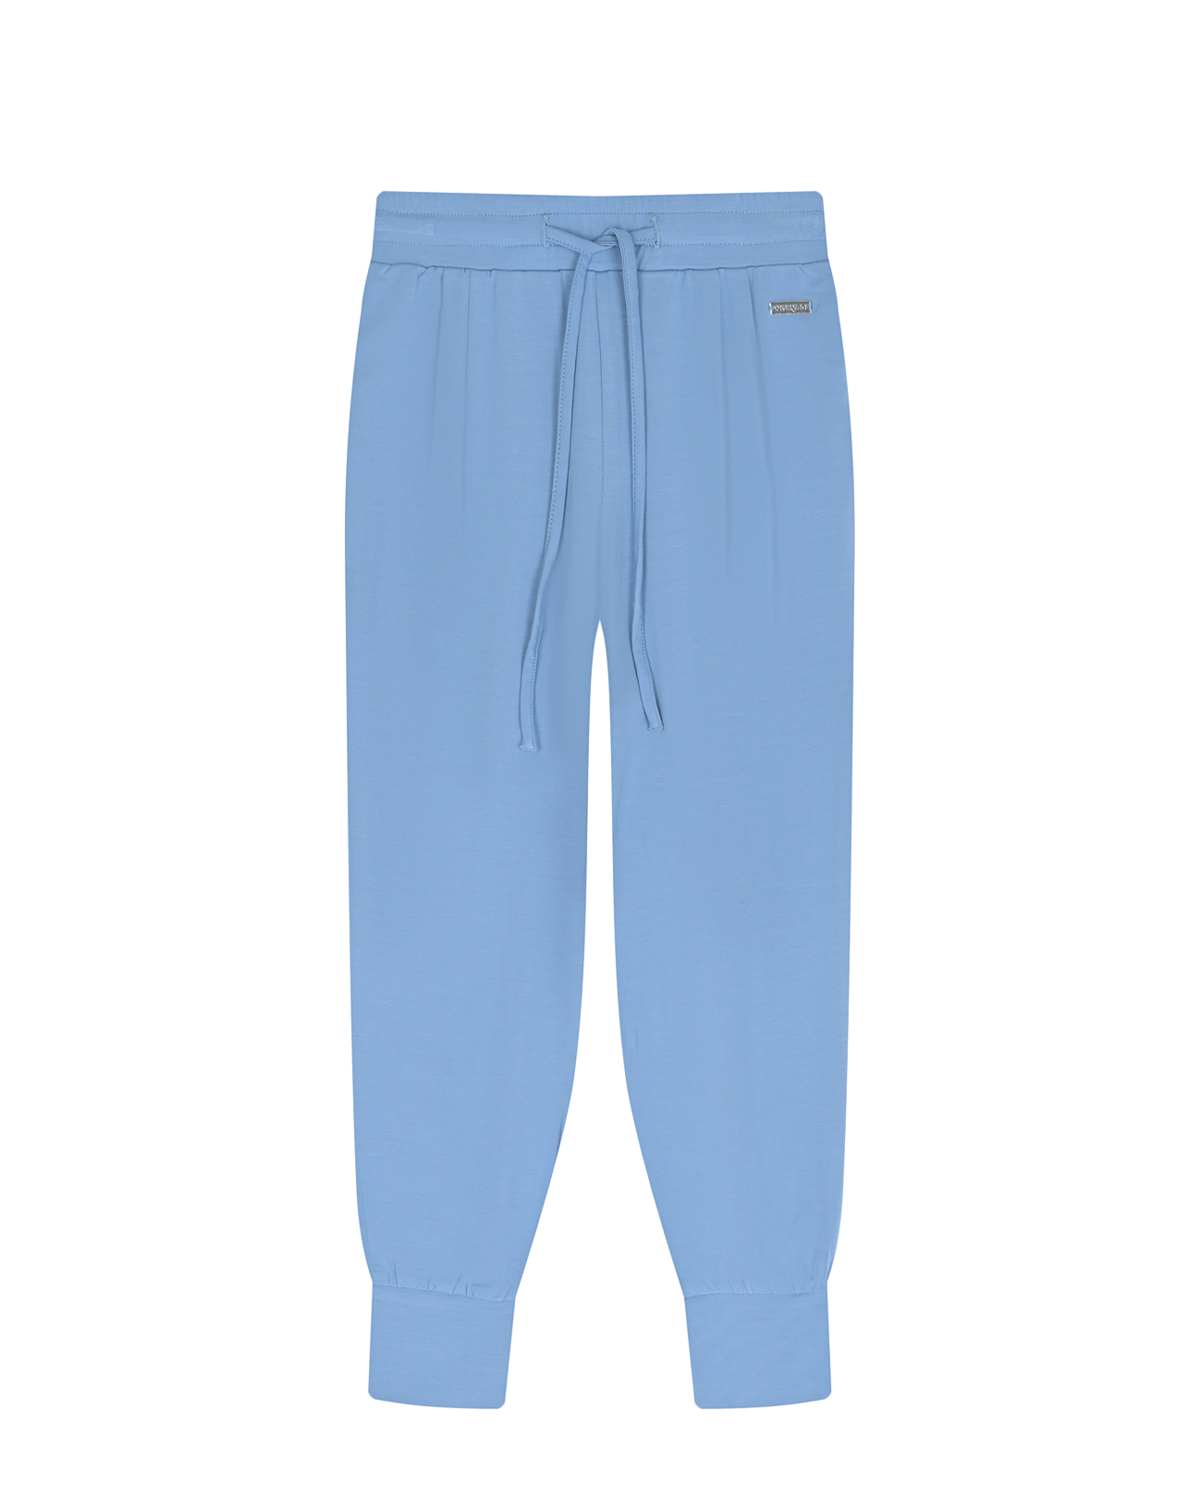 Спортивные брюки лавандового цвета Norveg детские синие перчатки touch screen norveg детские